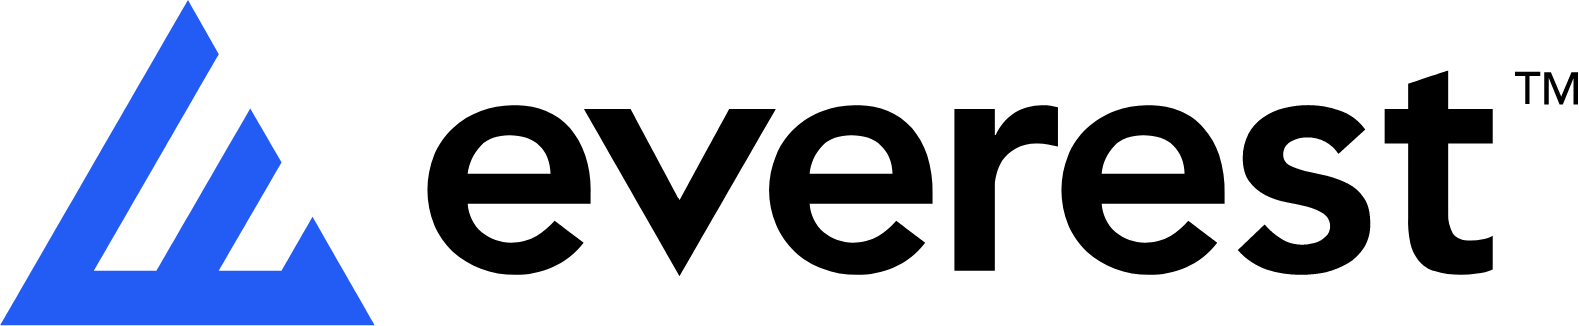 Everest Group logo large (transparent PNG)